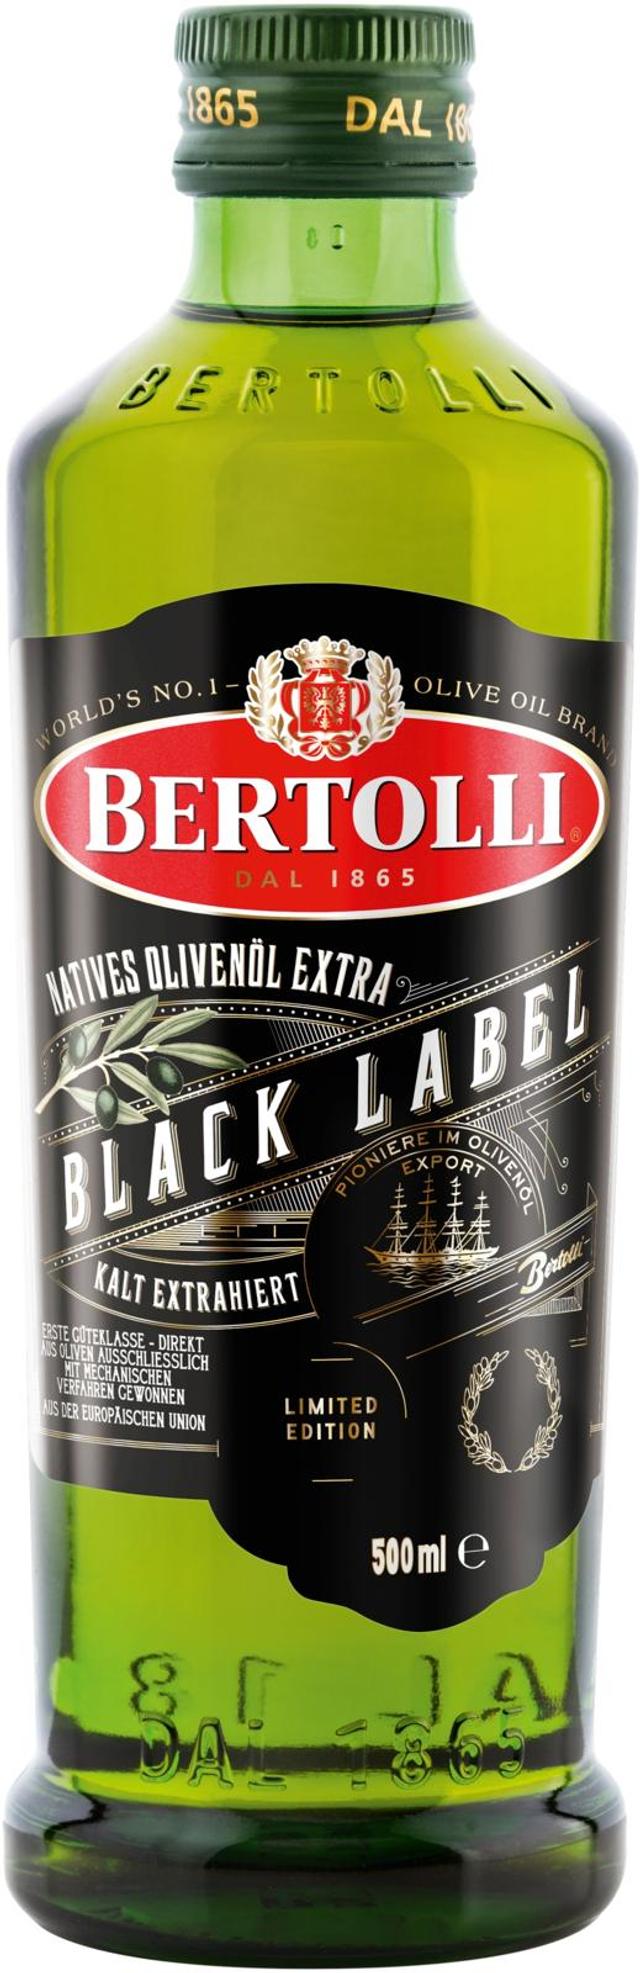 Bertolli Black Label ekstra-neitsytoliiviöljy 500ml